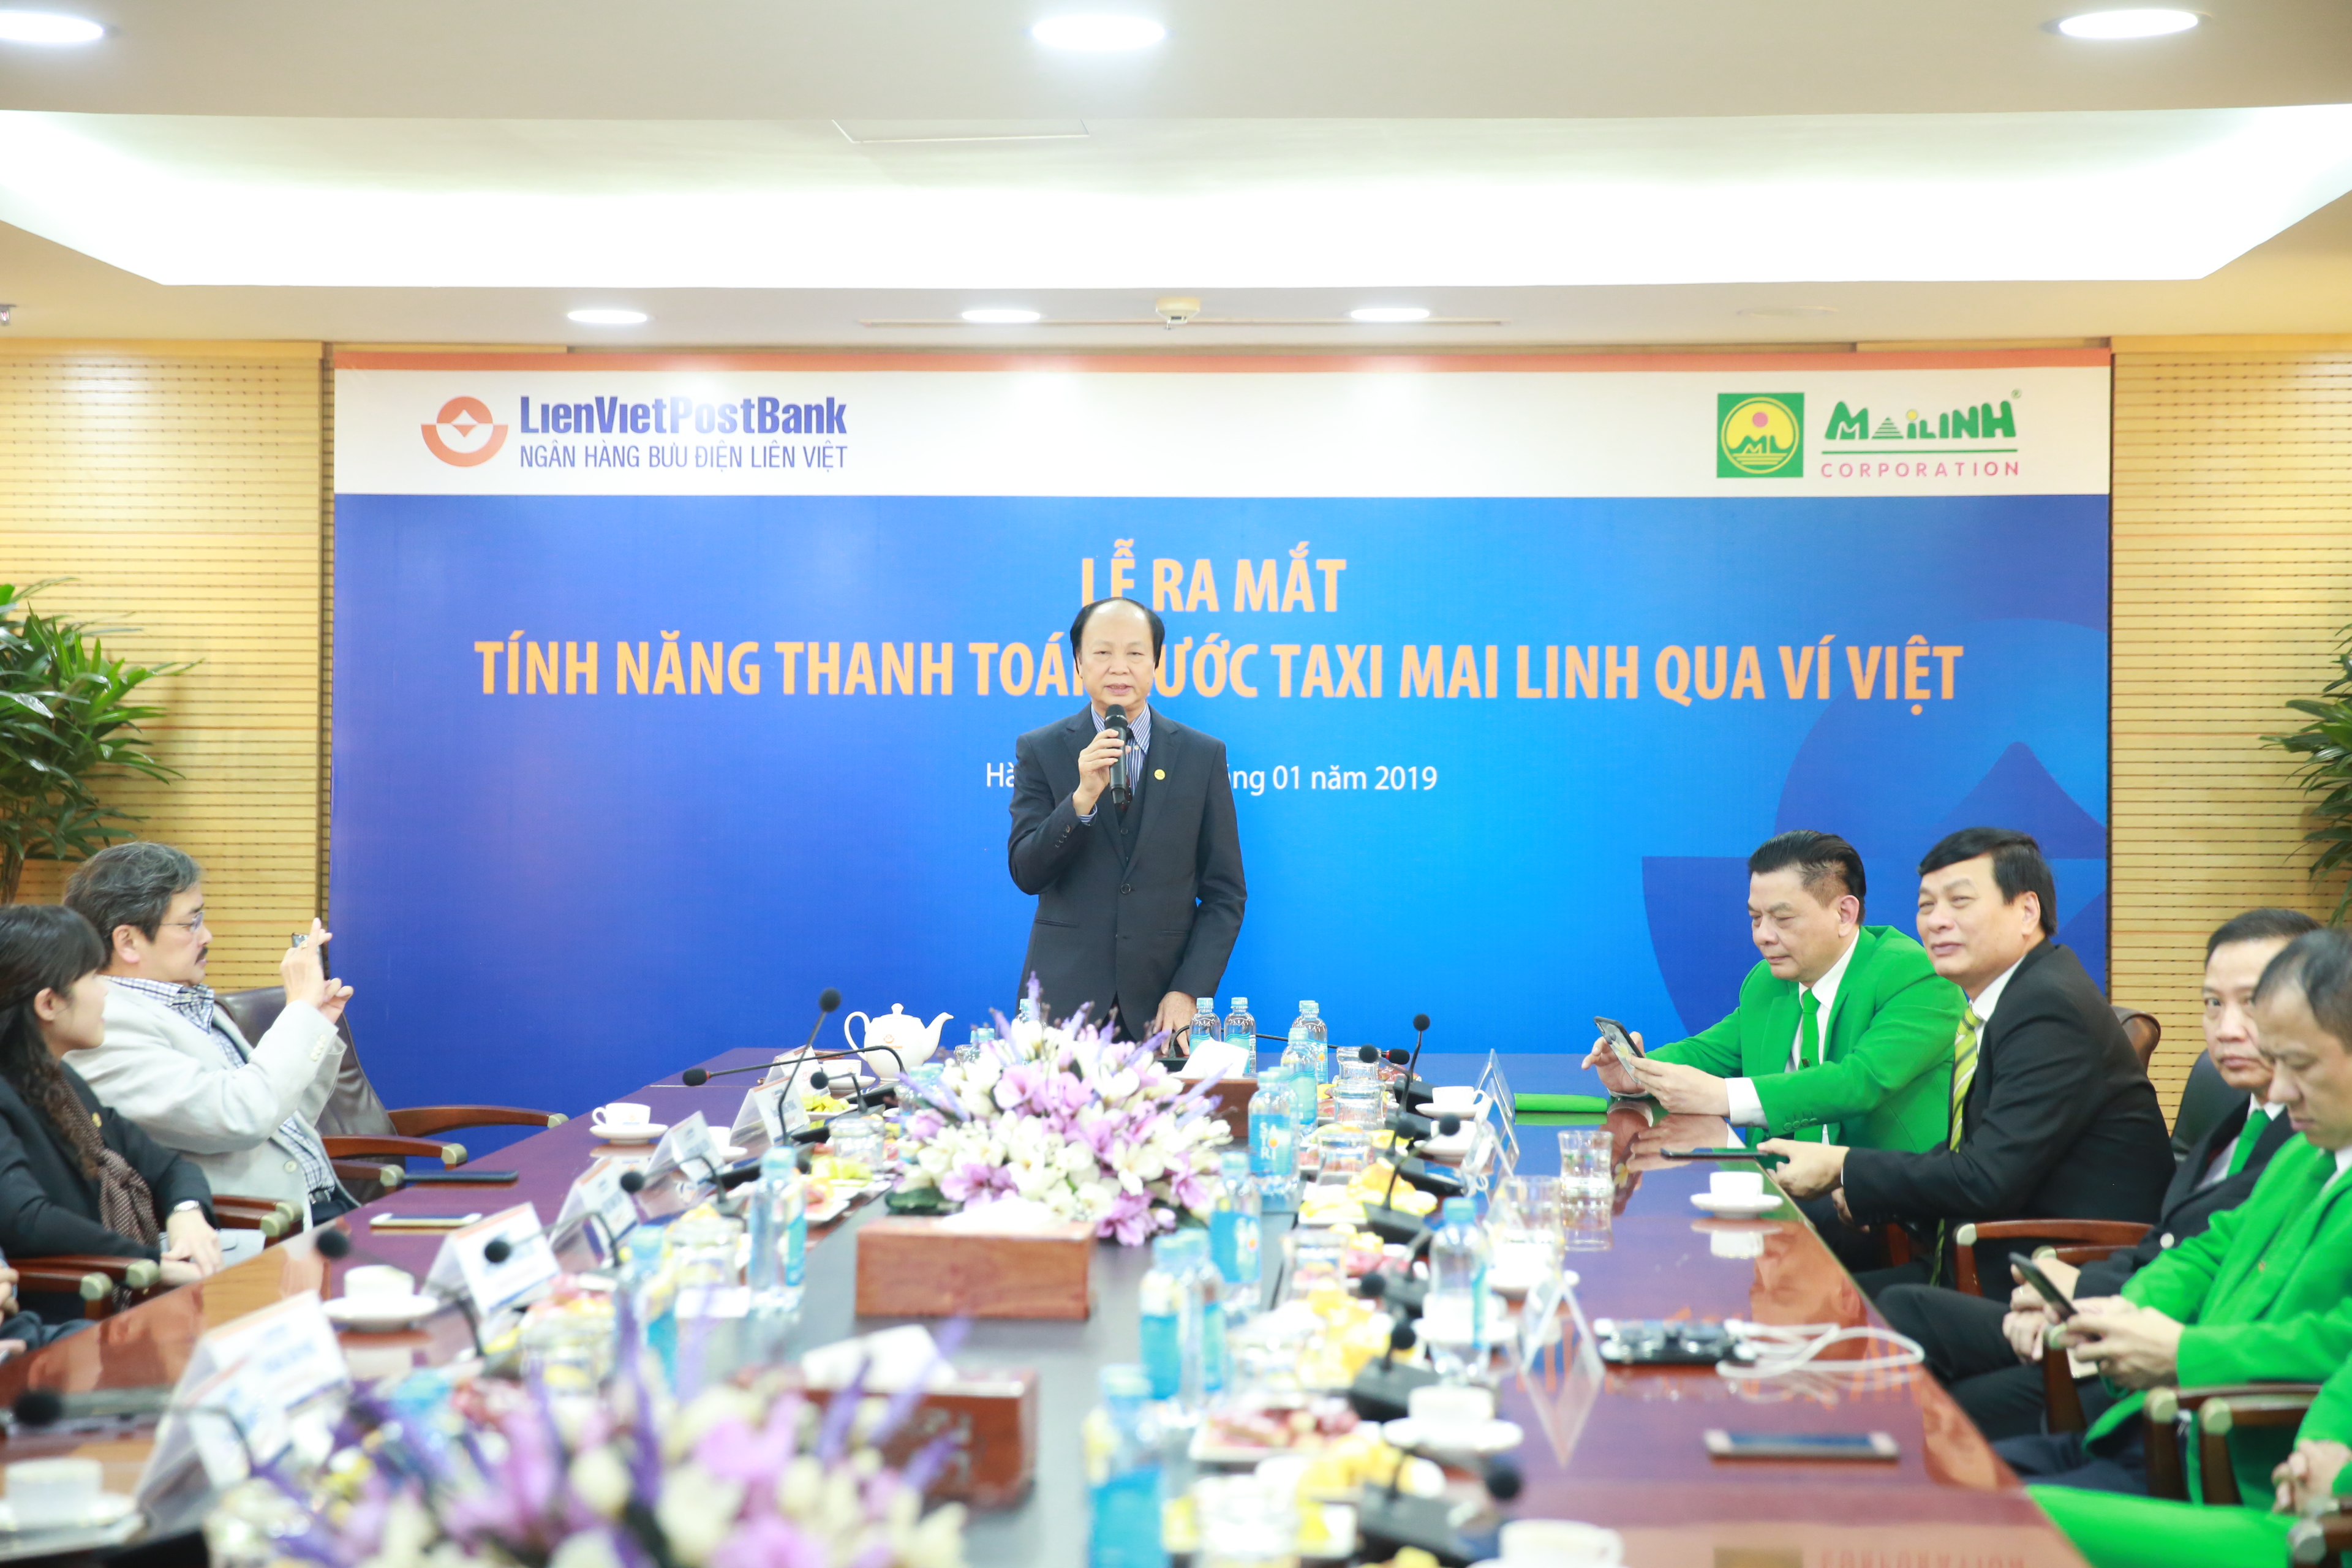 Mai Linh hợp tác với Lienvietpostbank cung cấp dịch vụ 'ĐI TAXI - CHI VÍ VIỆT'